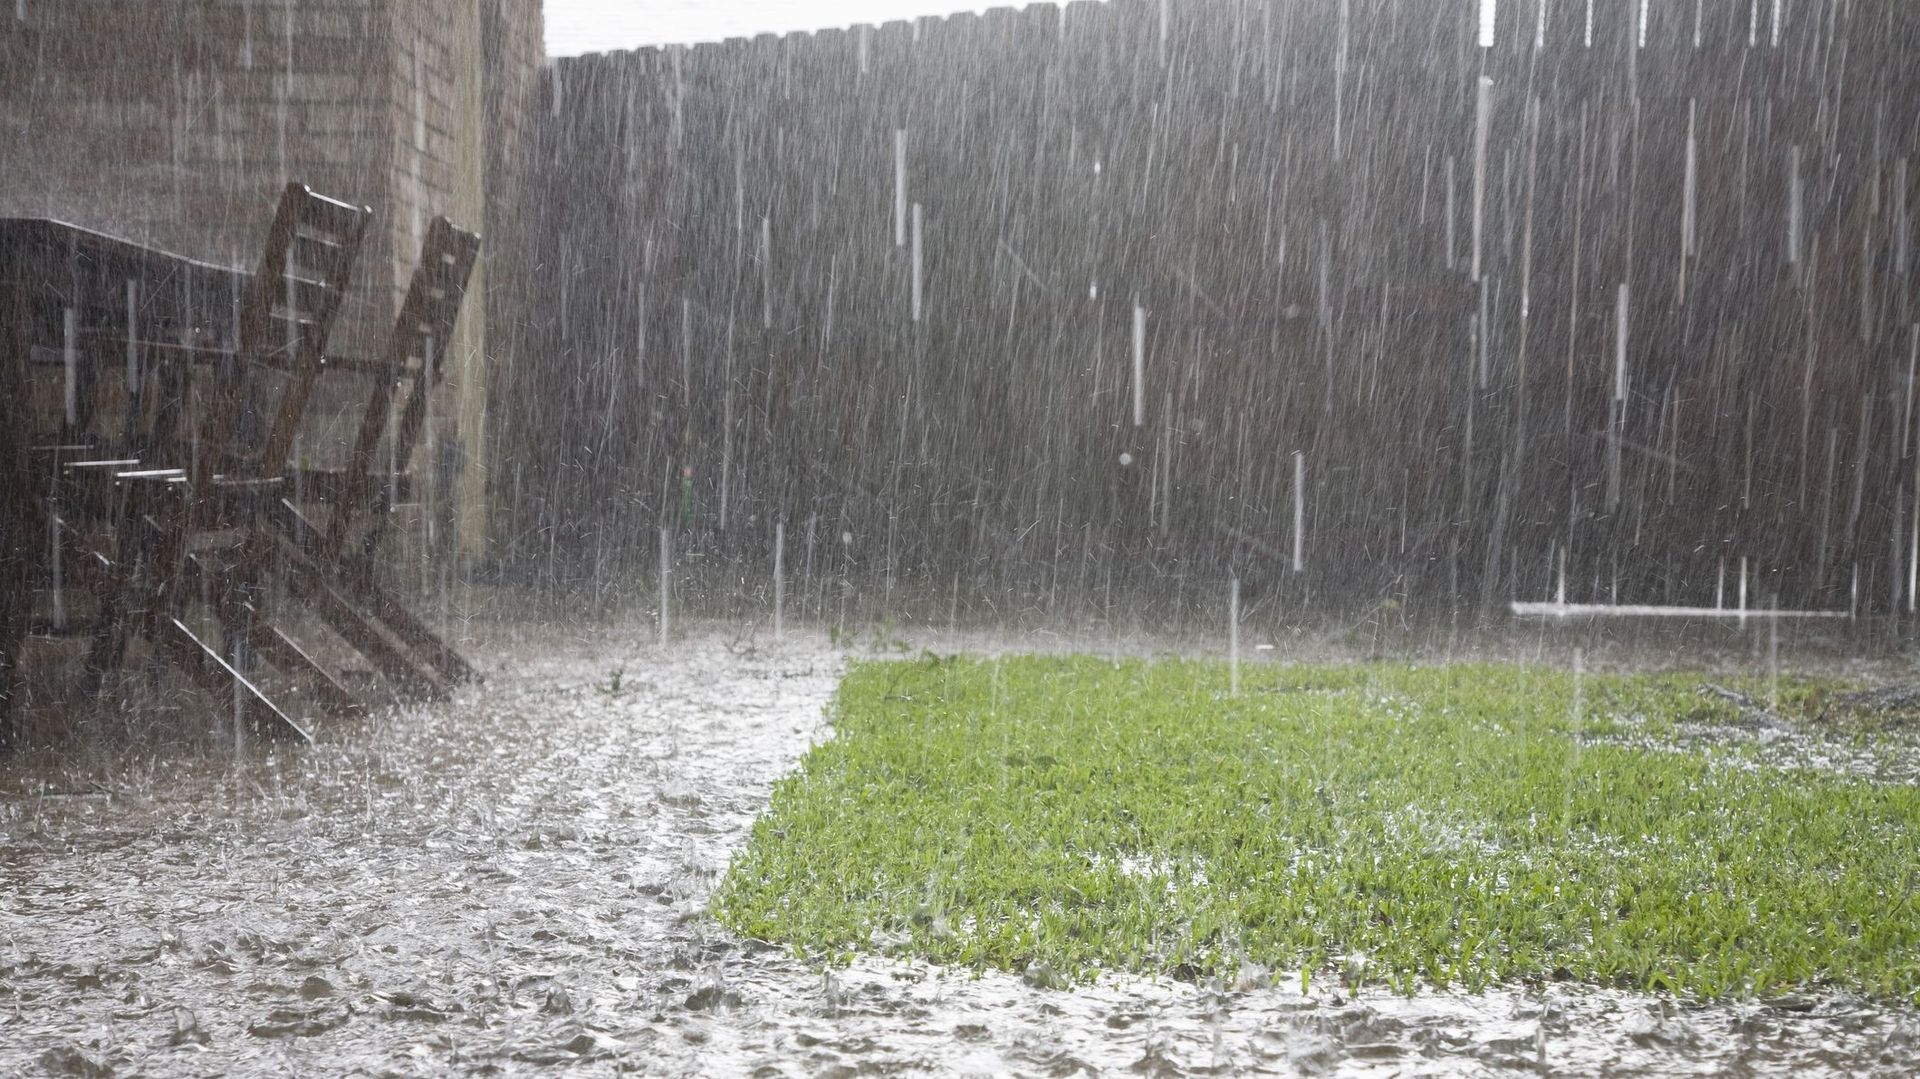 Ce lundi 16 janvier, il est encore tombé à Uccle 15,2 mm de pluie.